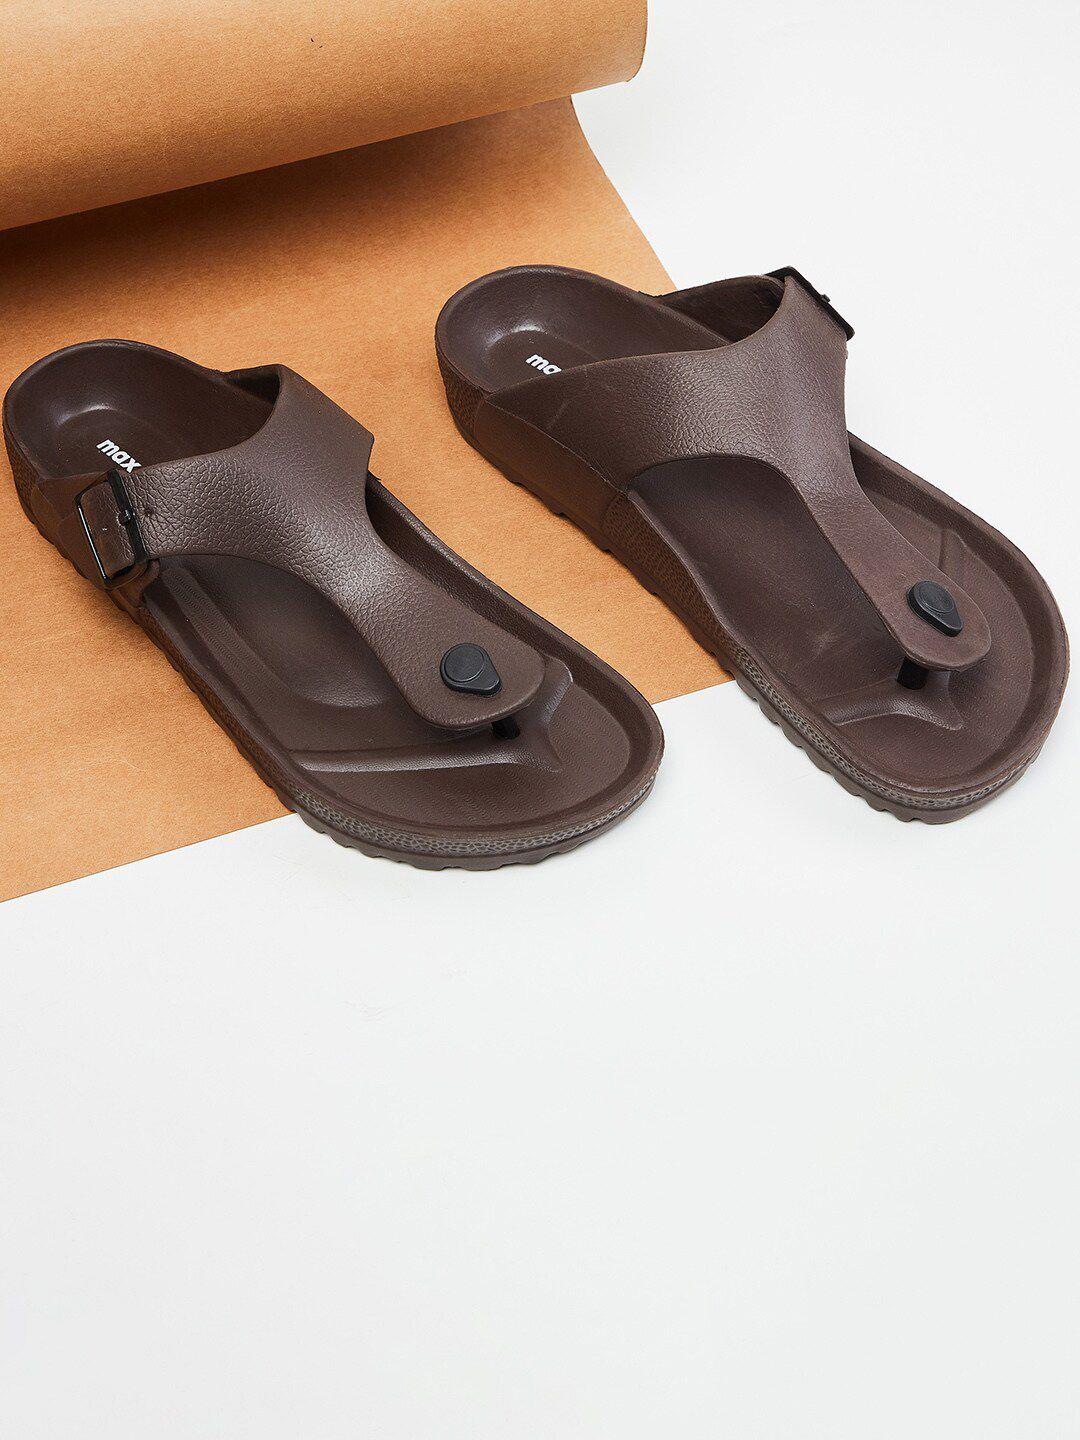 max-men-brown-comfort-sandals